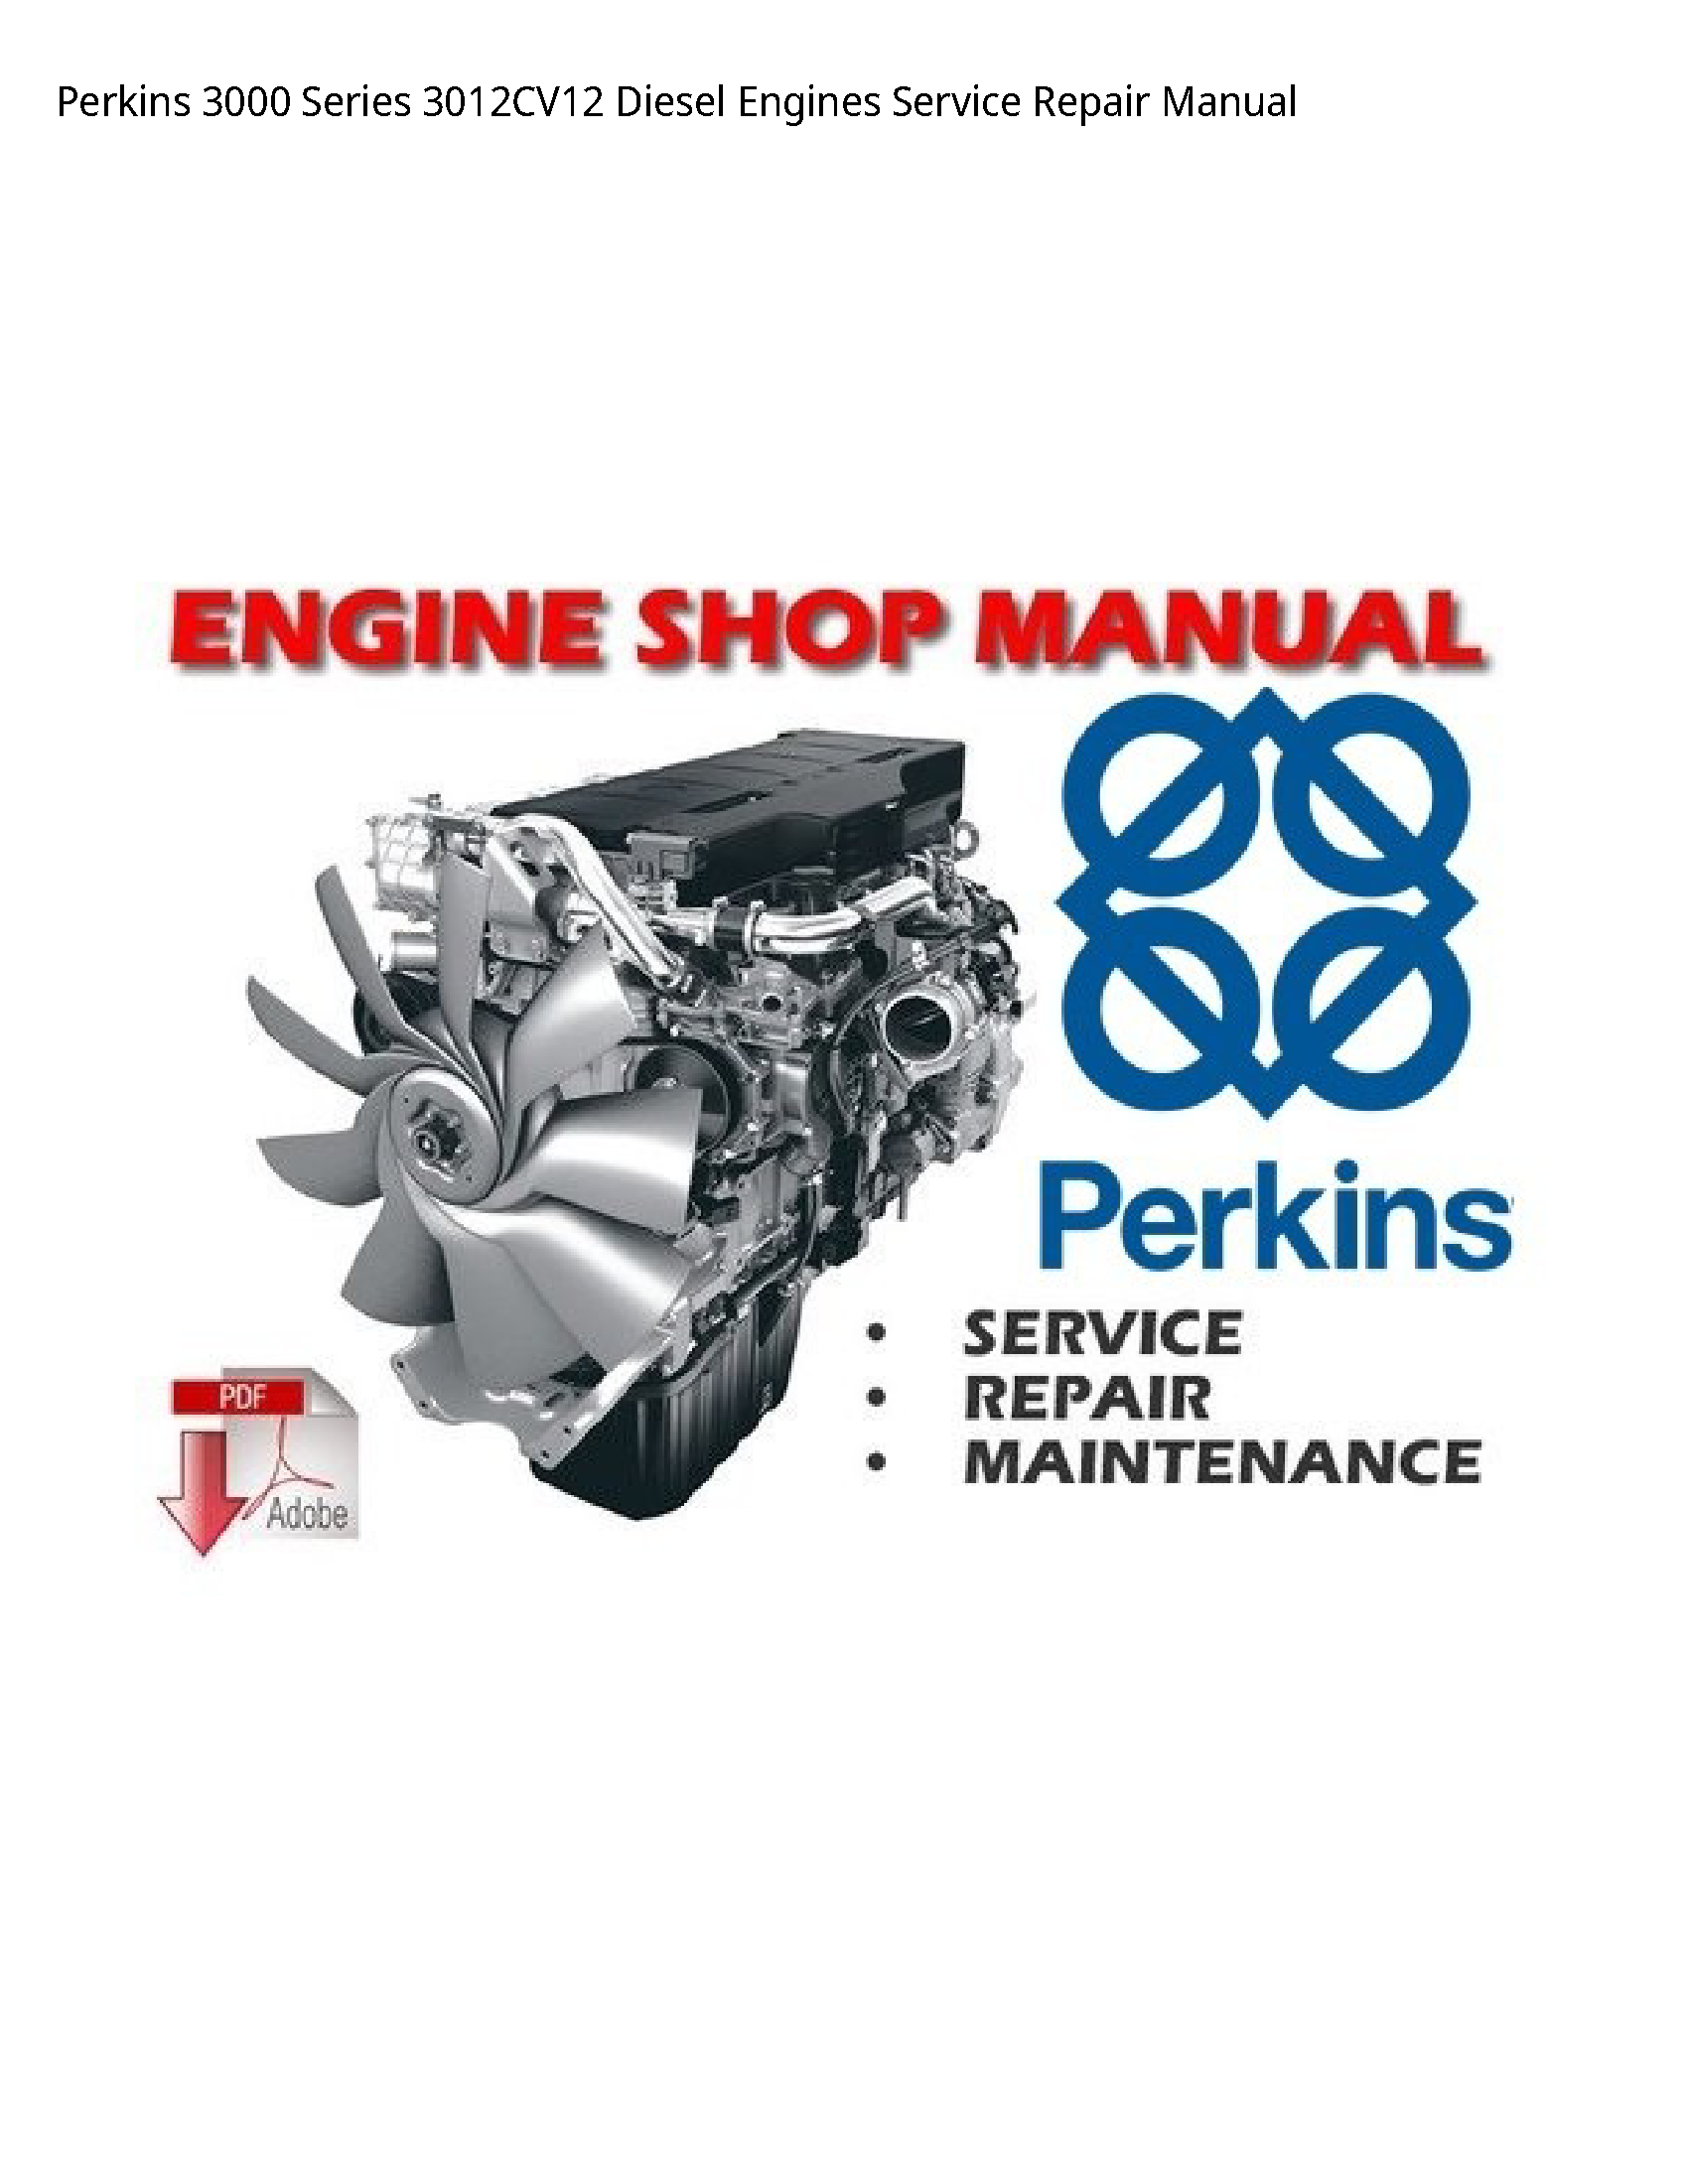 Perkins 3000 Series Diesel Engines manual